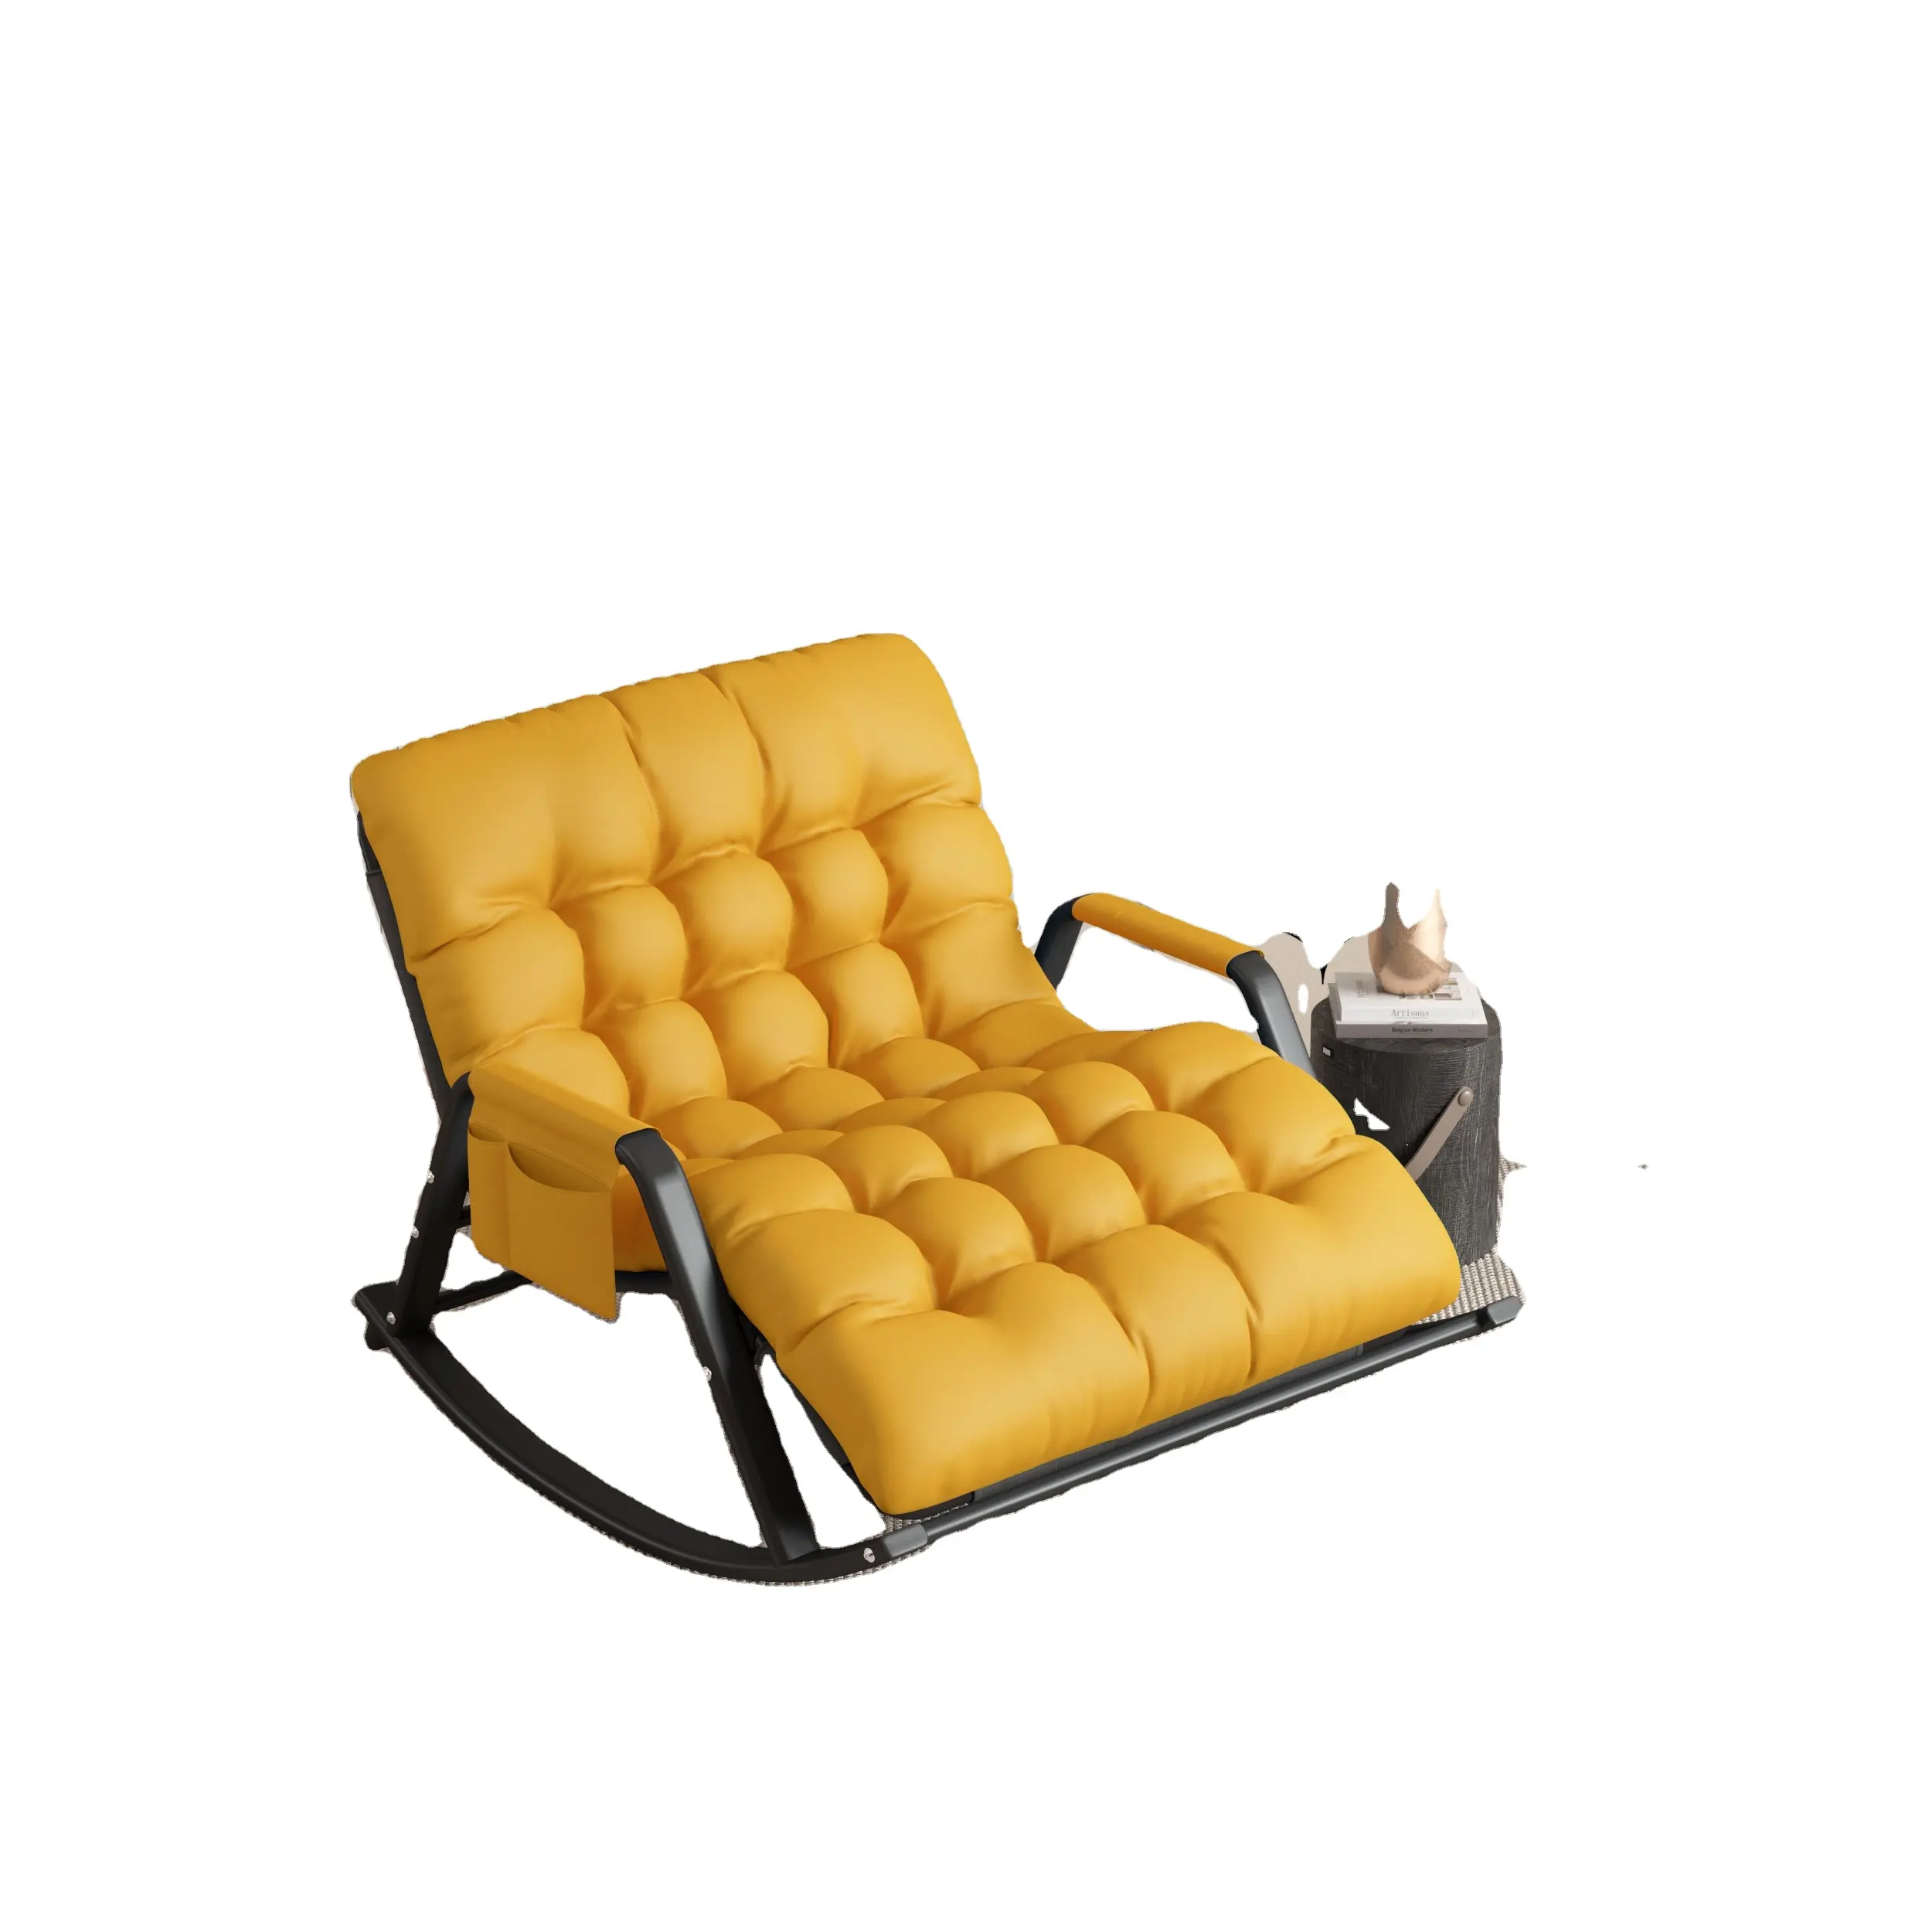 أريكة أرجوحة مصنوعة من القماش عالية التقنية معلقة على شكل بيضة، كراسي هزازة غير كاملة، كرسي دوار مريح بمسند للقدمين